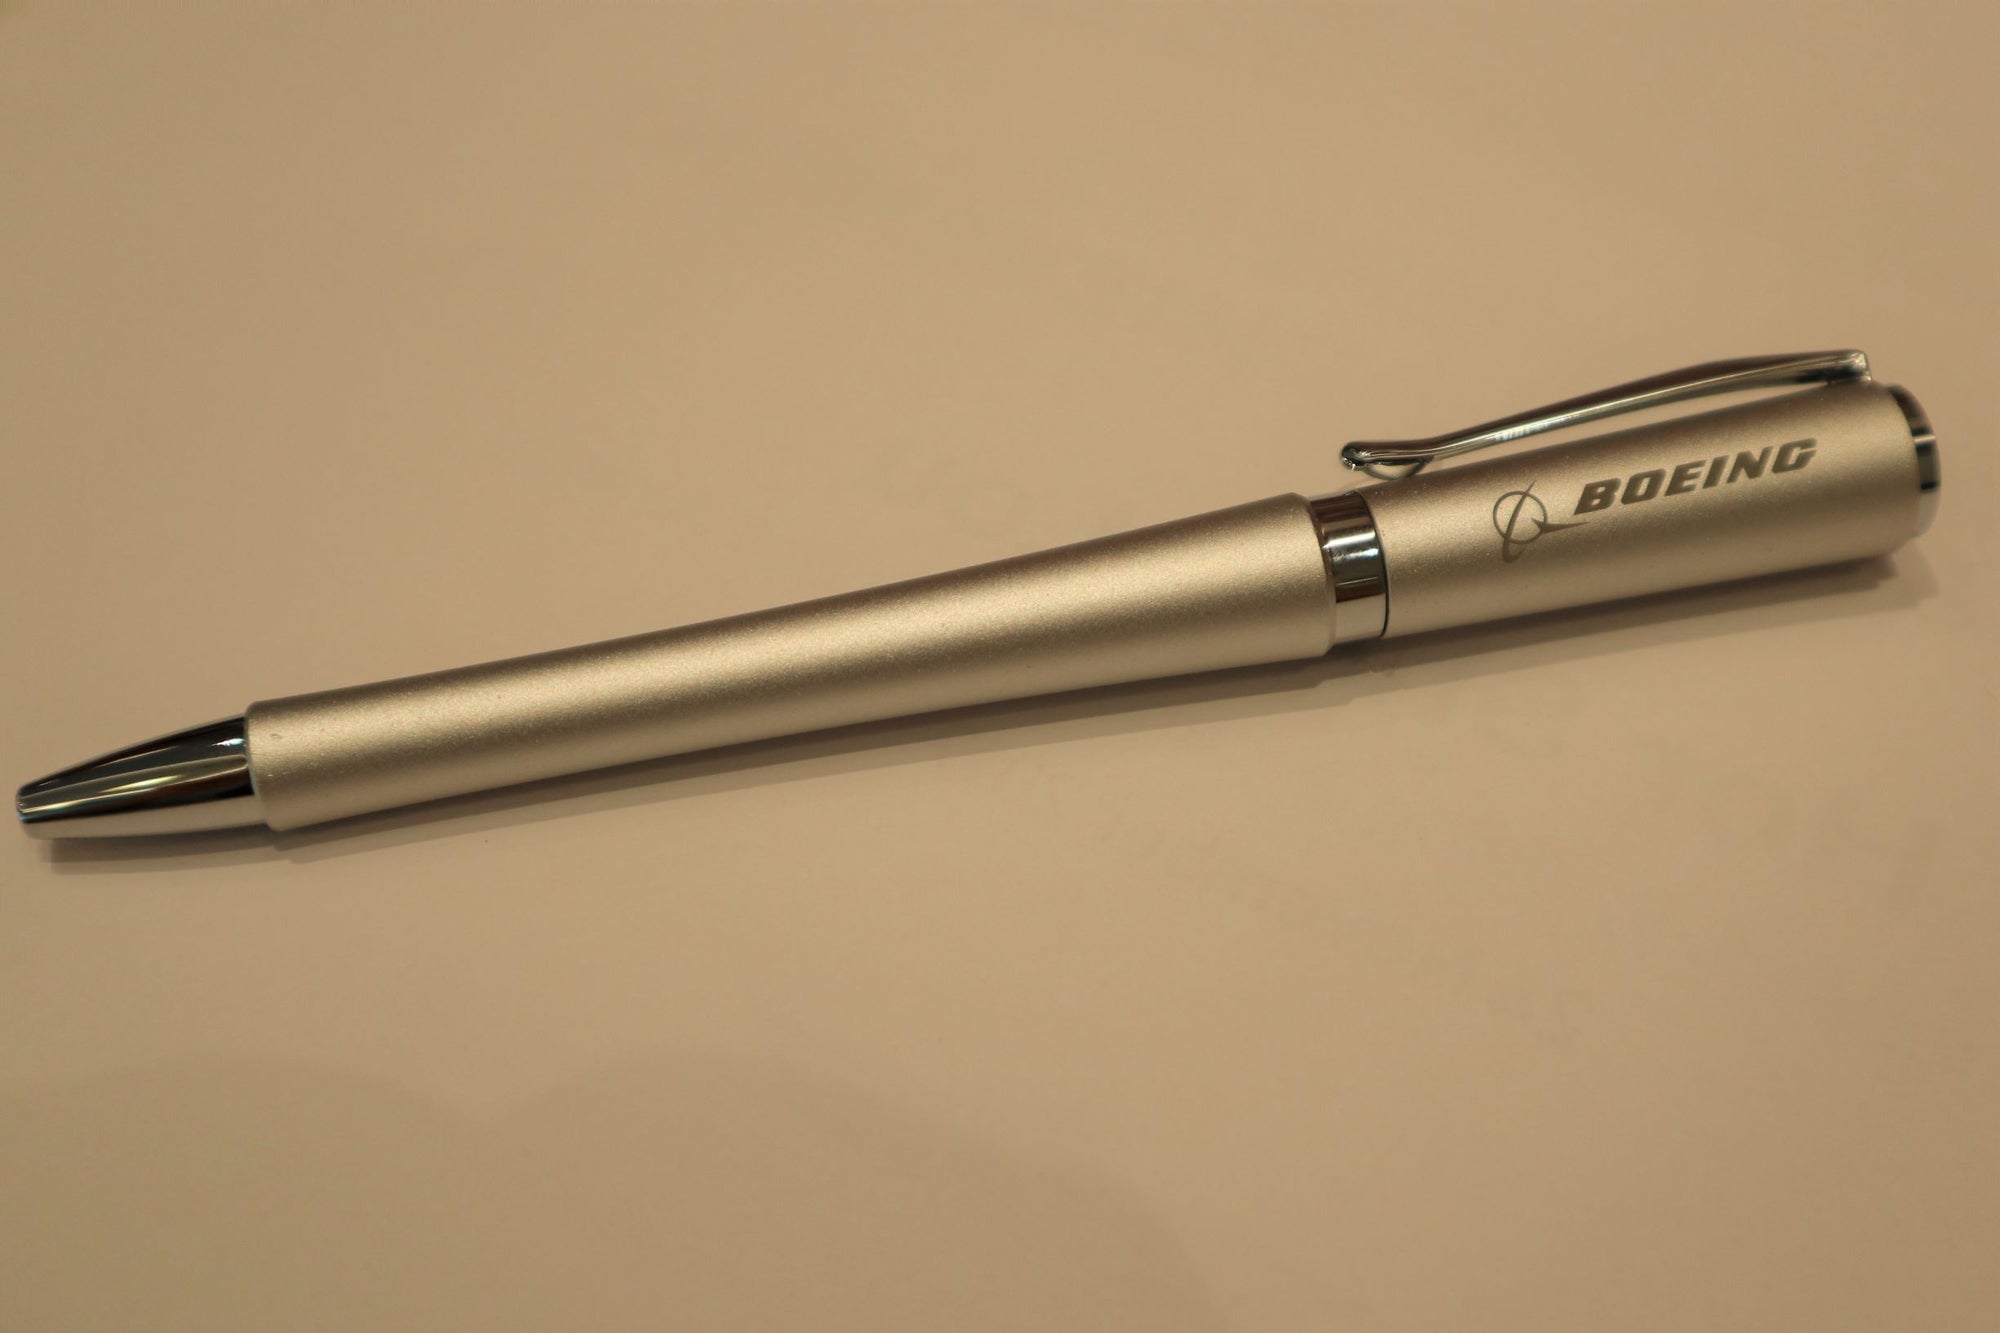 Aerodynamic Chrome Pen